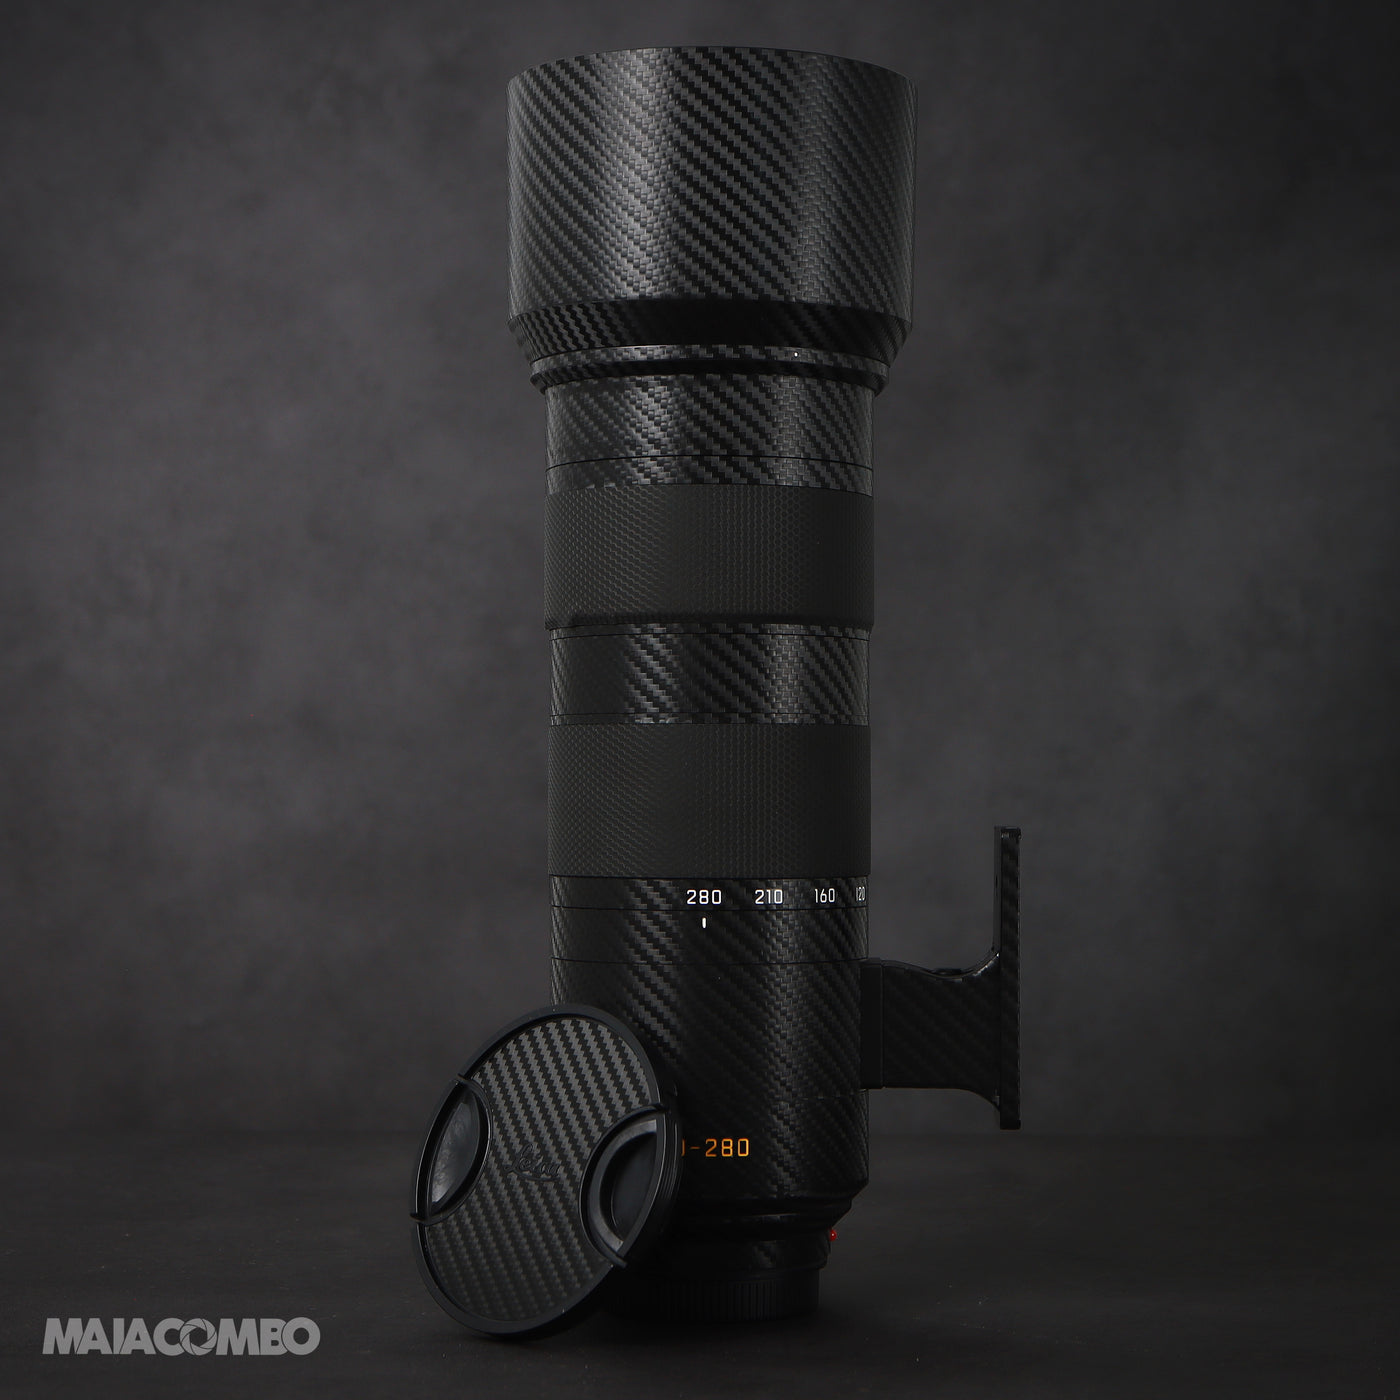 Leica APO-Vario-Elmarit-SL 90-280mm f/2.8-4 Lens Skin